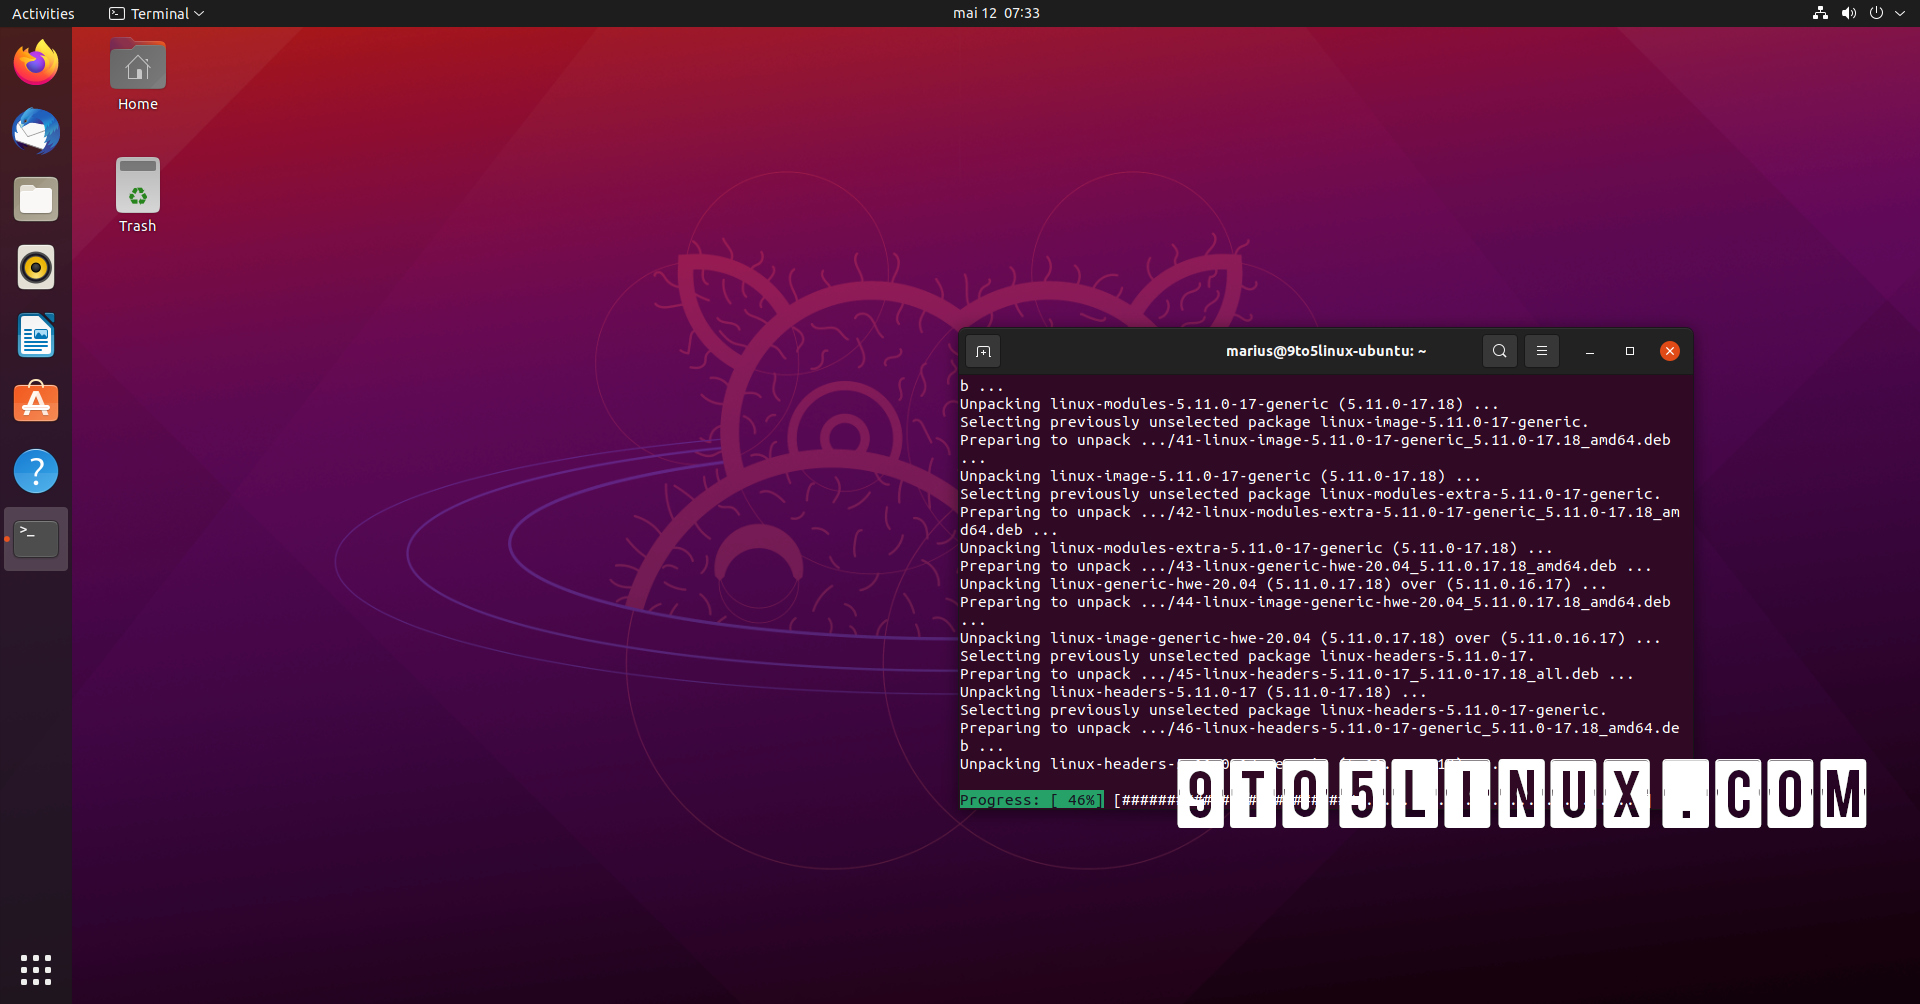 Ubuntu 21.04 Users Get Major Kernel Security Update, 17 Vulnerabilities Patched